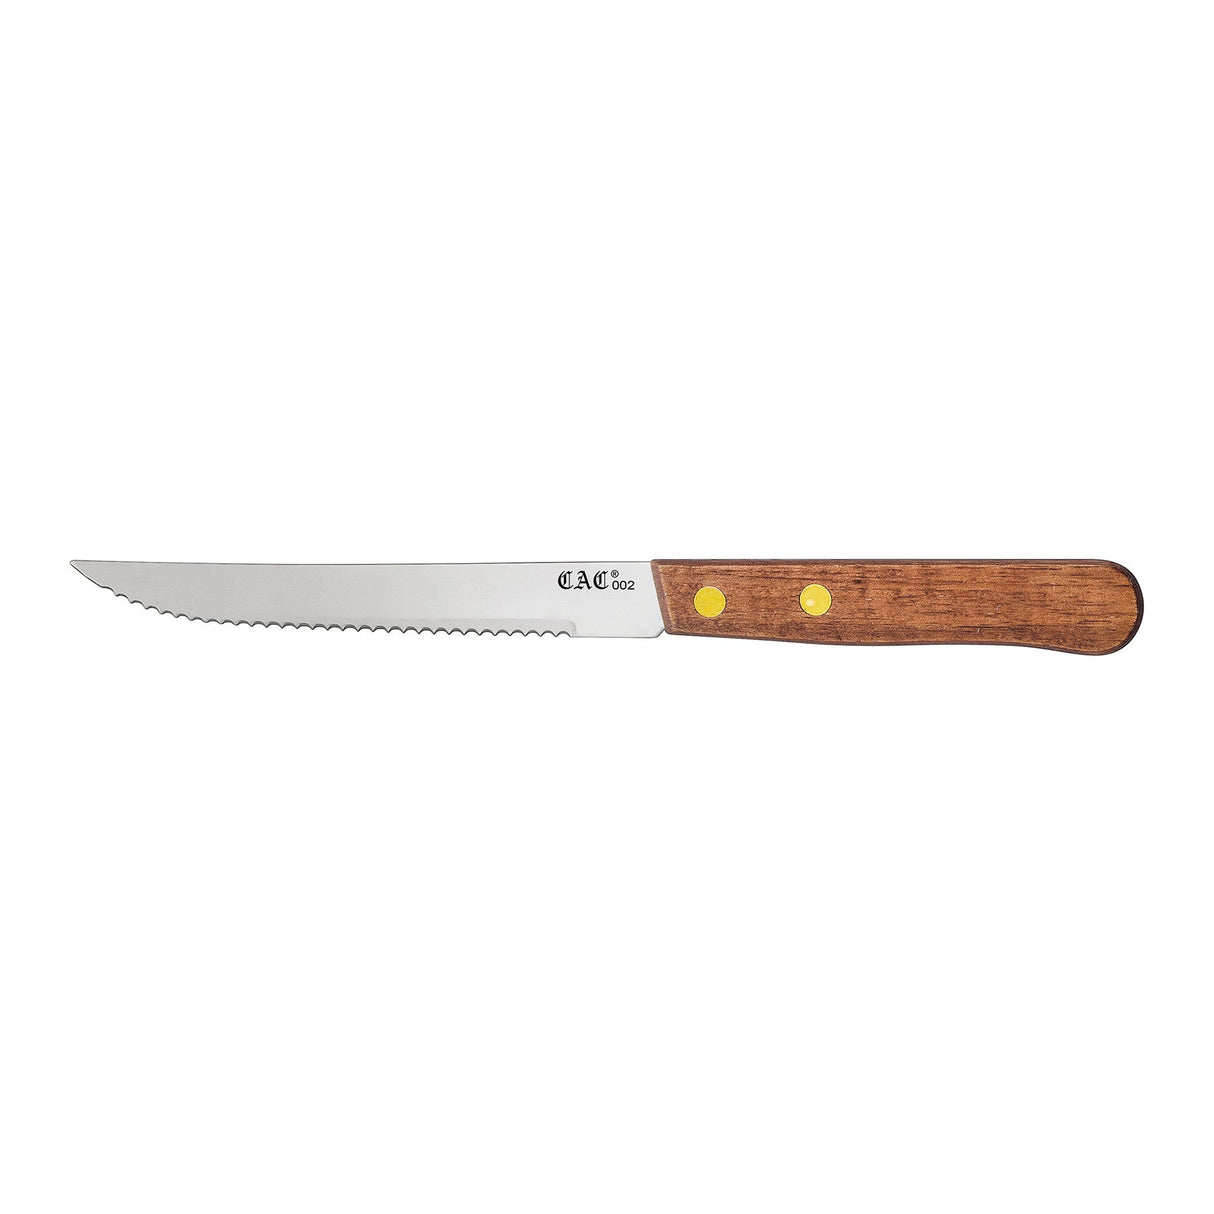 Knife Steak Pointed Tip Wood Hdl 4-3/4"